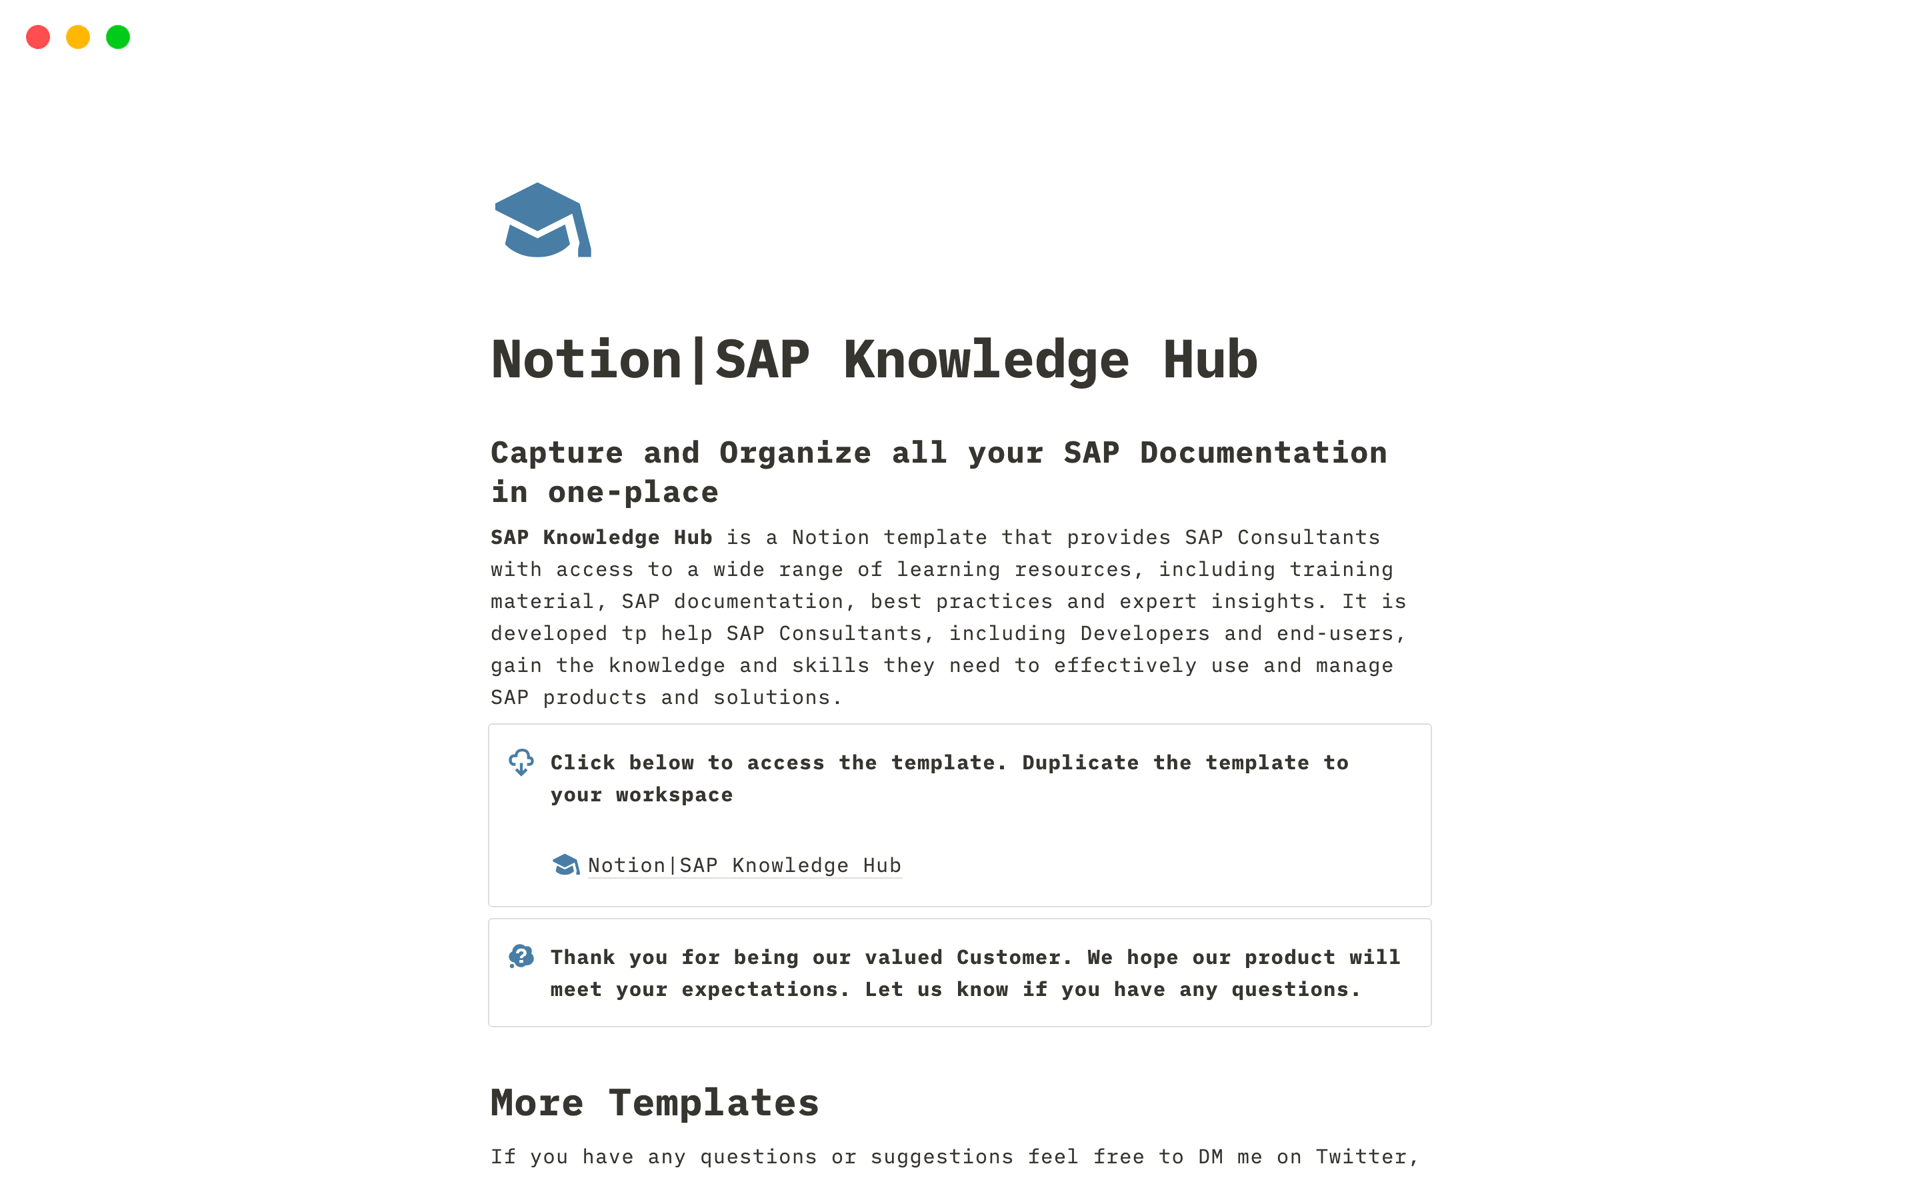 Vista previa de una plantilla para SAP Knowledge Hub